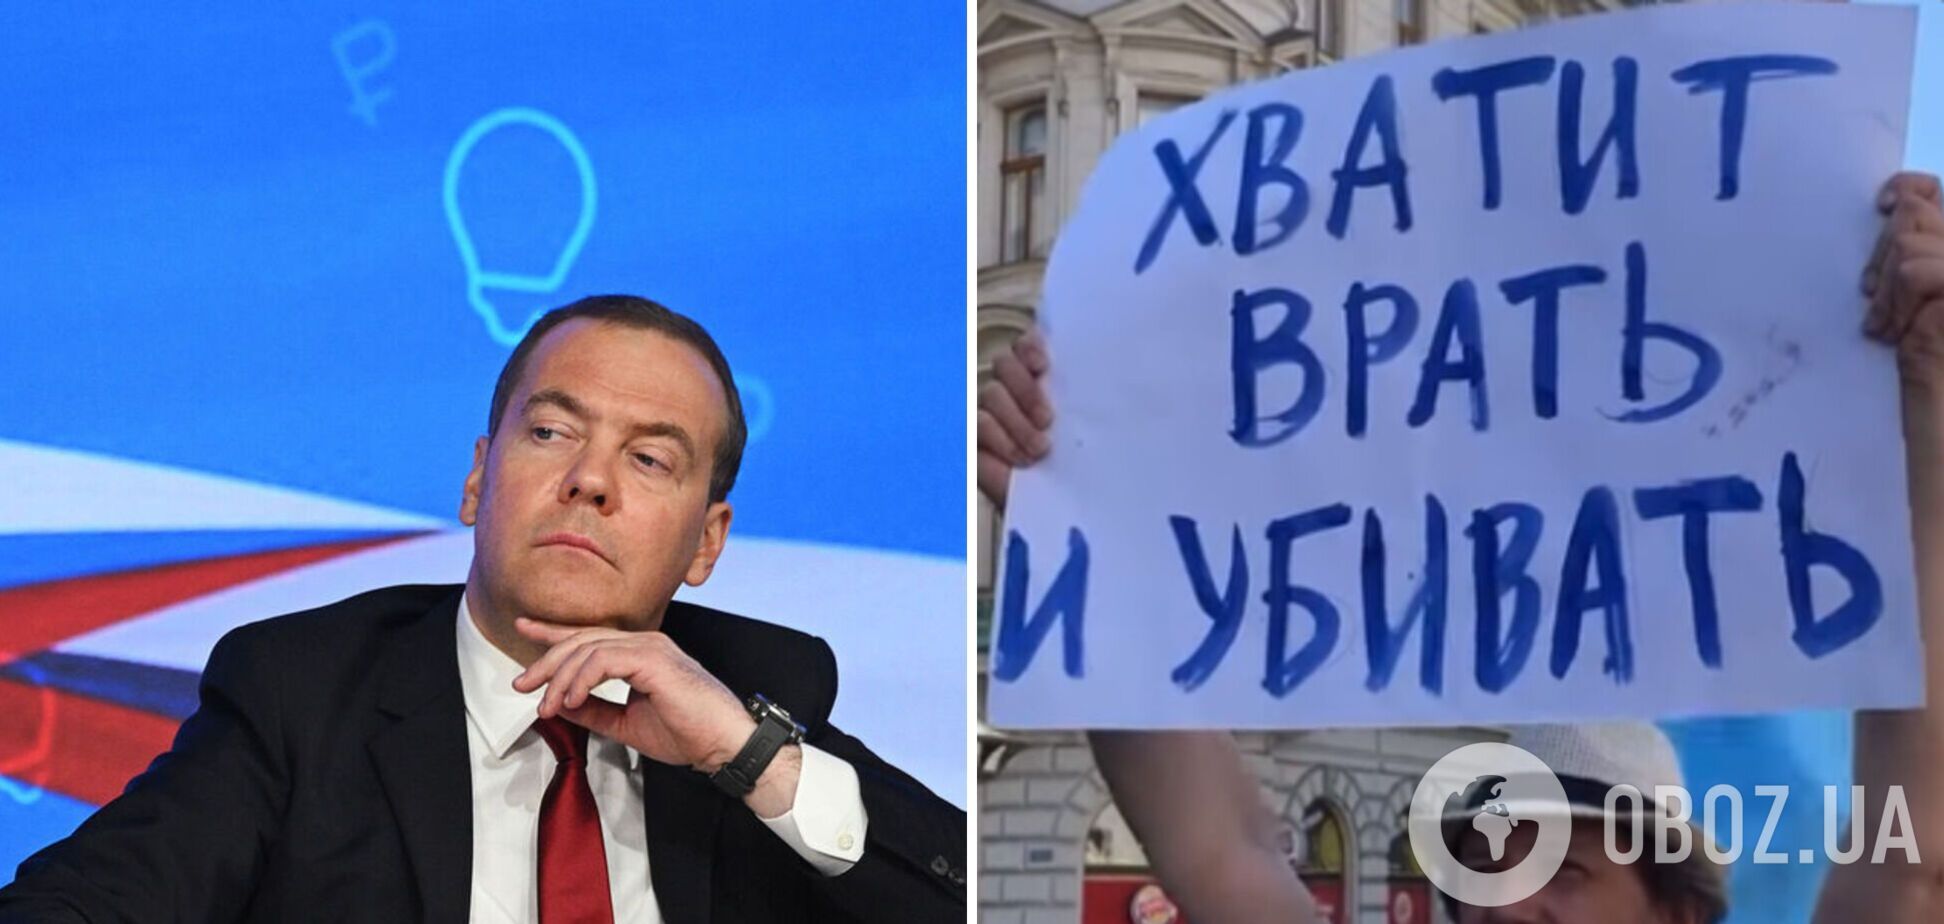 Медведев выдал новый бред и угрозы человечеству